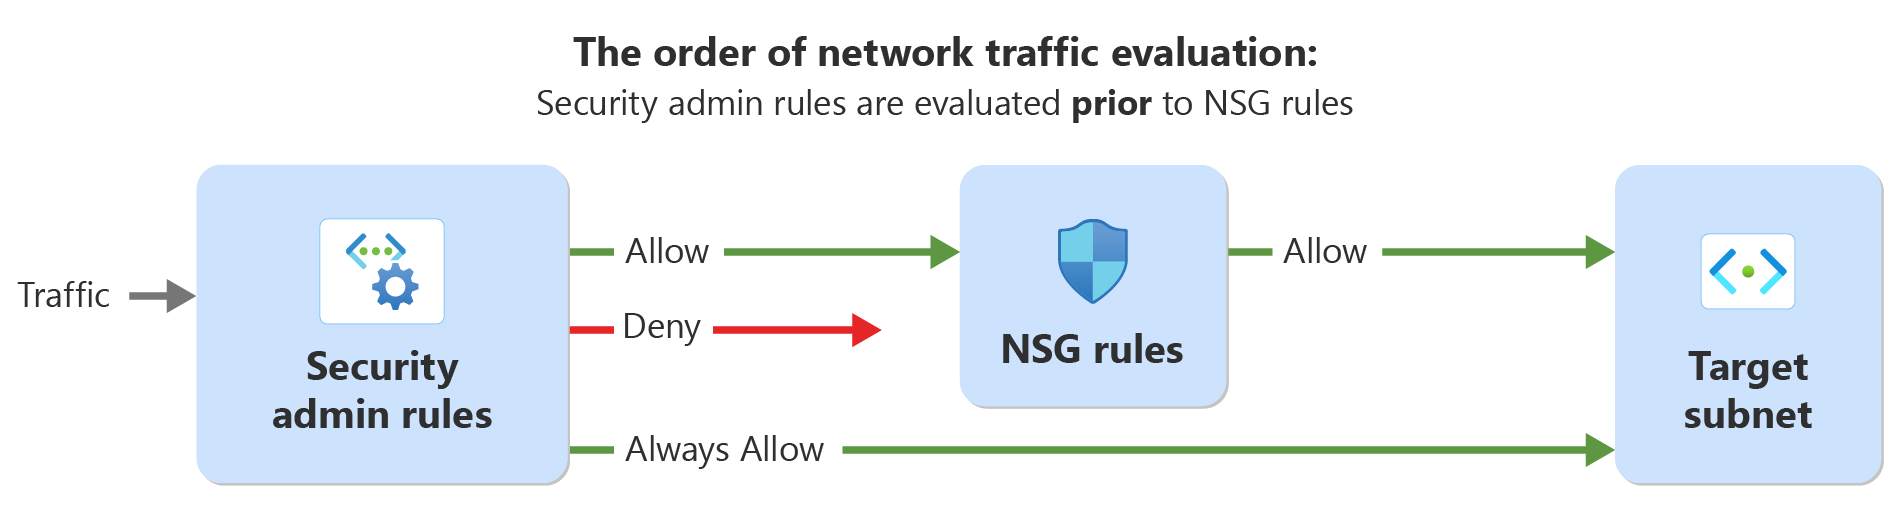 Diagramm: Auswertungsreihenfolge für Netzwerkdatenverkehr mit Sicherheitsadministratorregeln und Netzwerksicherheitsregeln